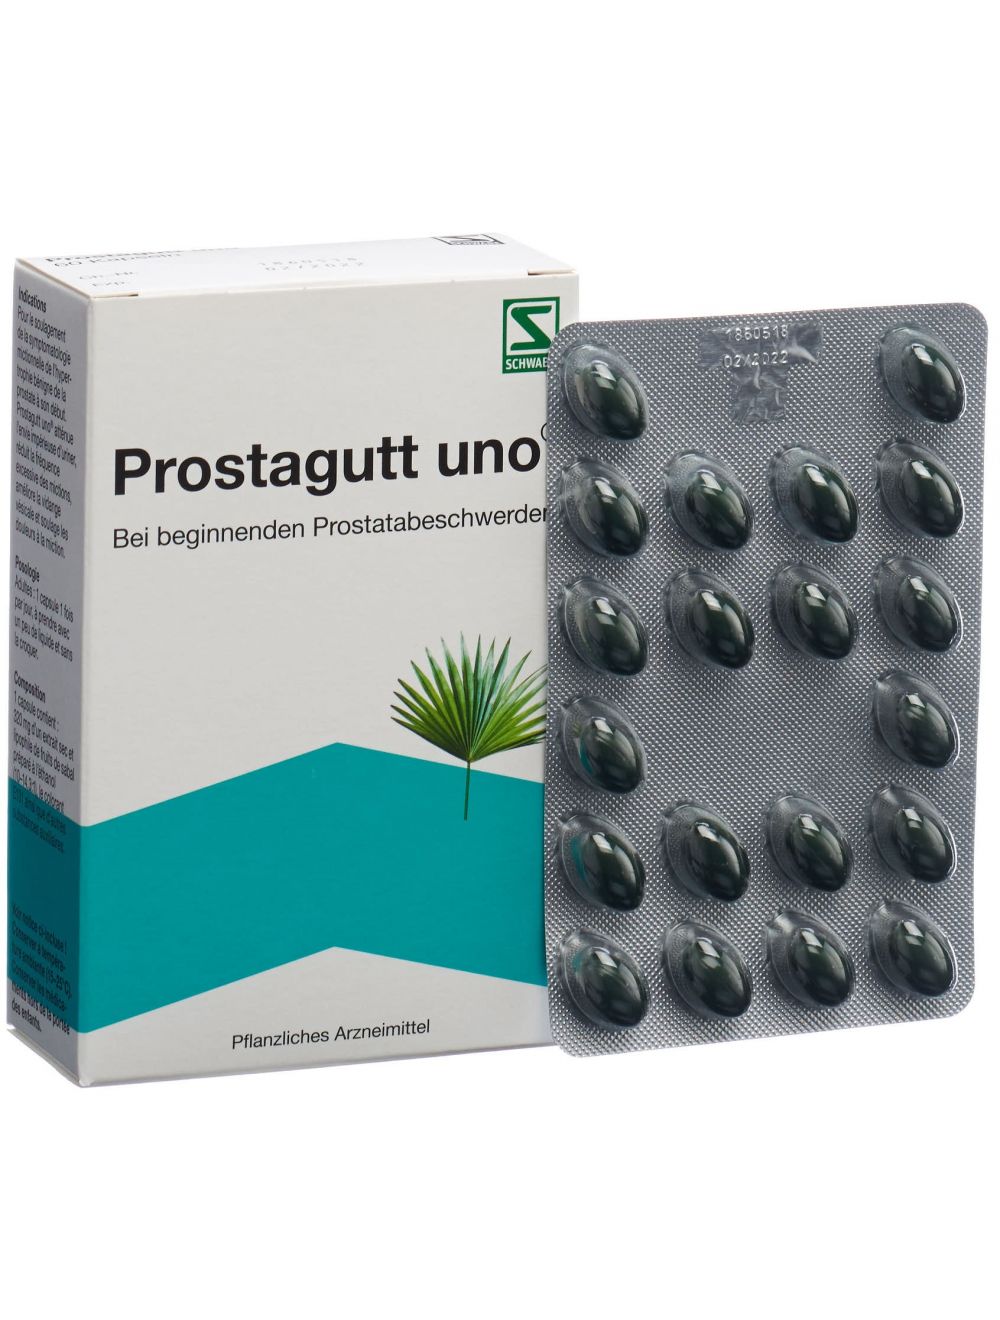 medicament prostate sans ordonnance en pharmacie